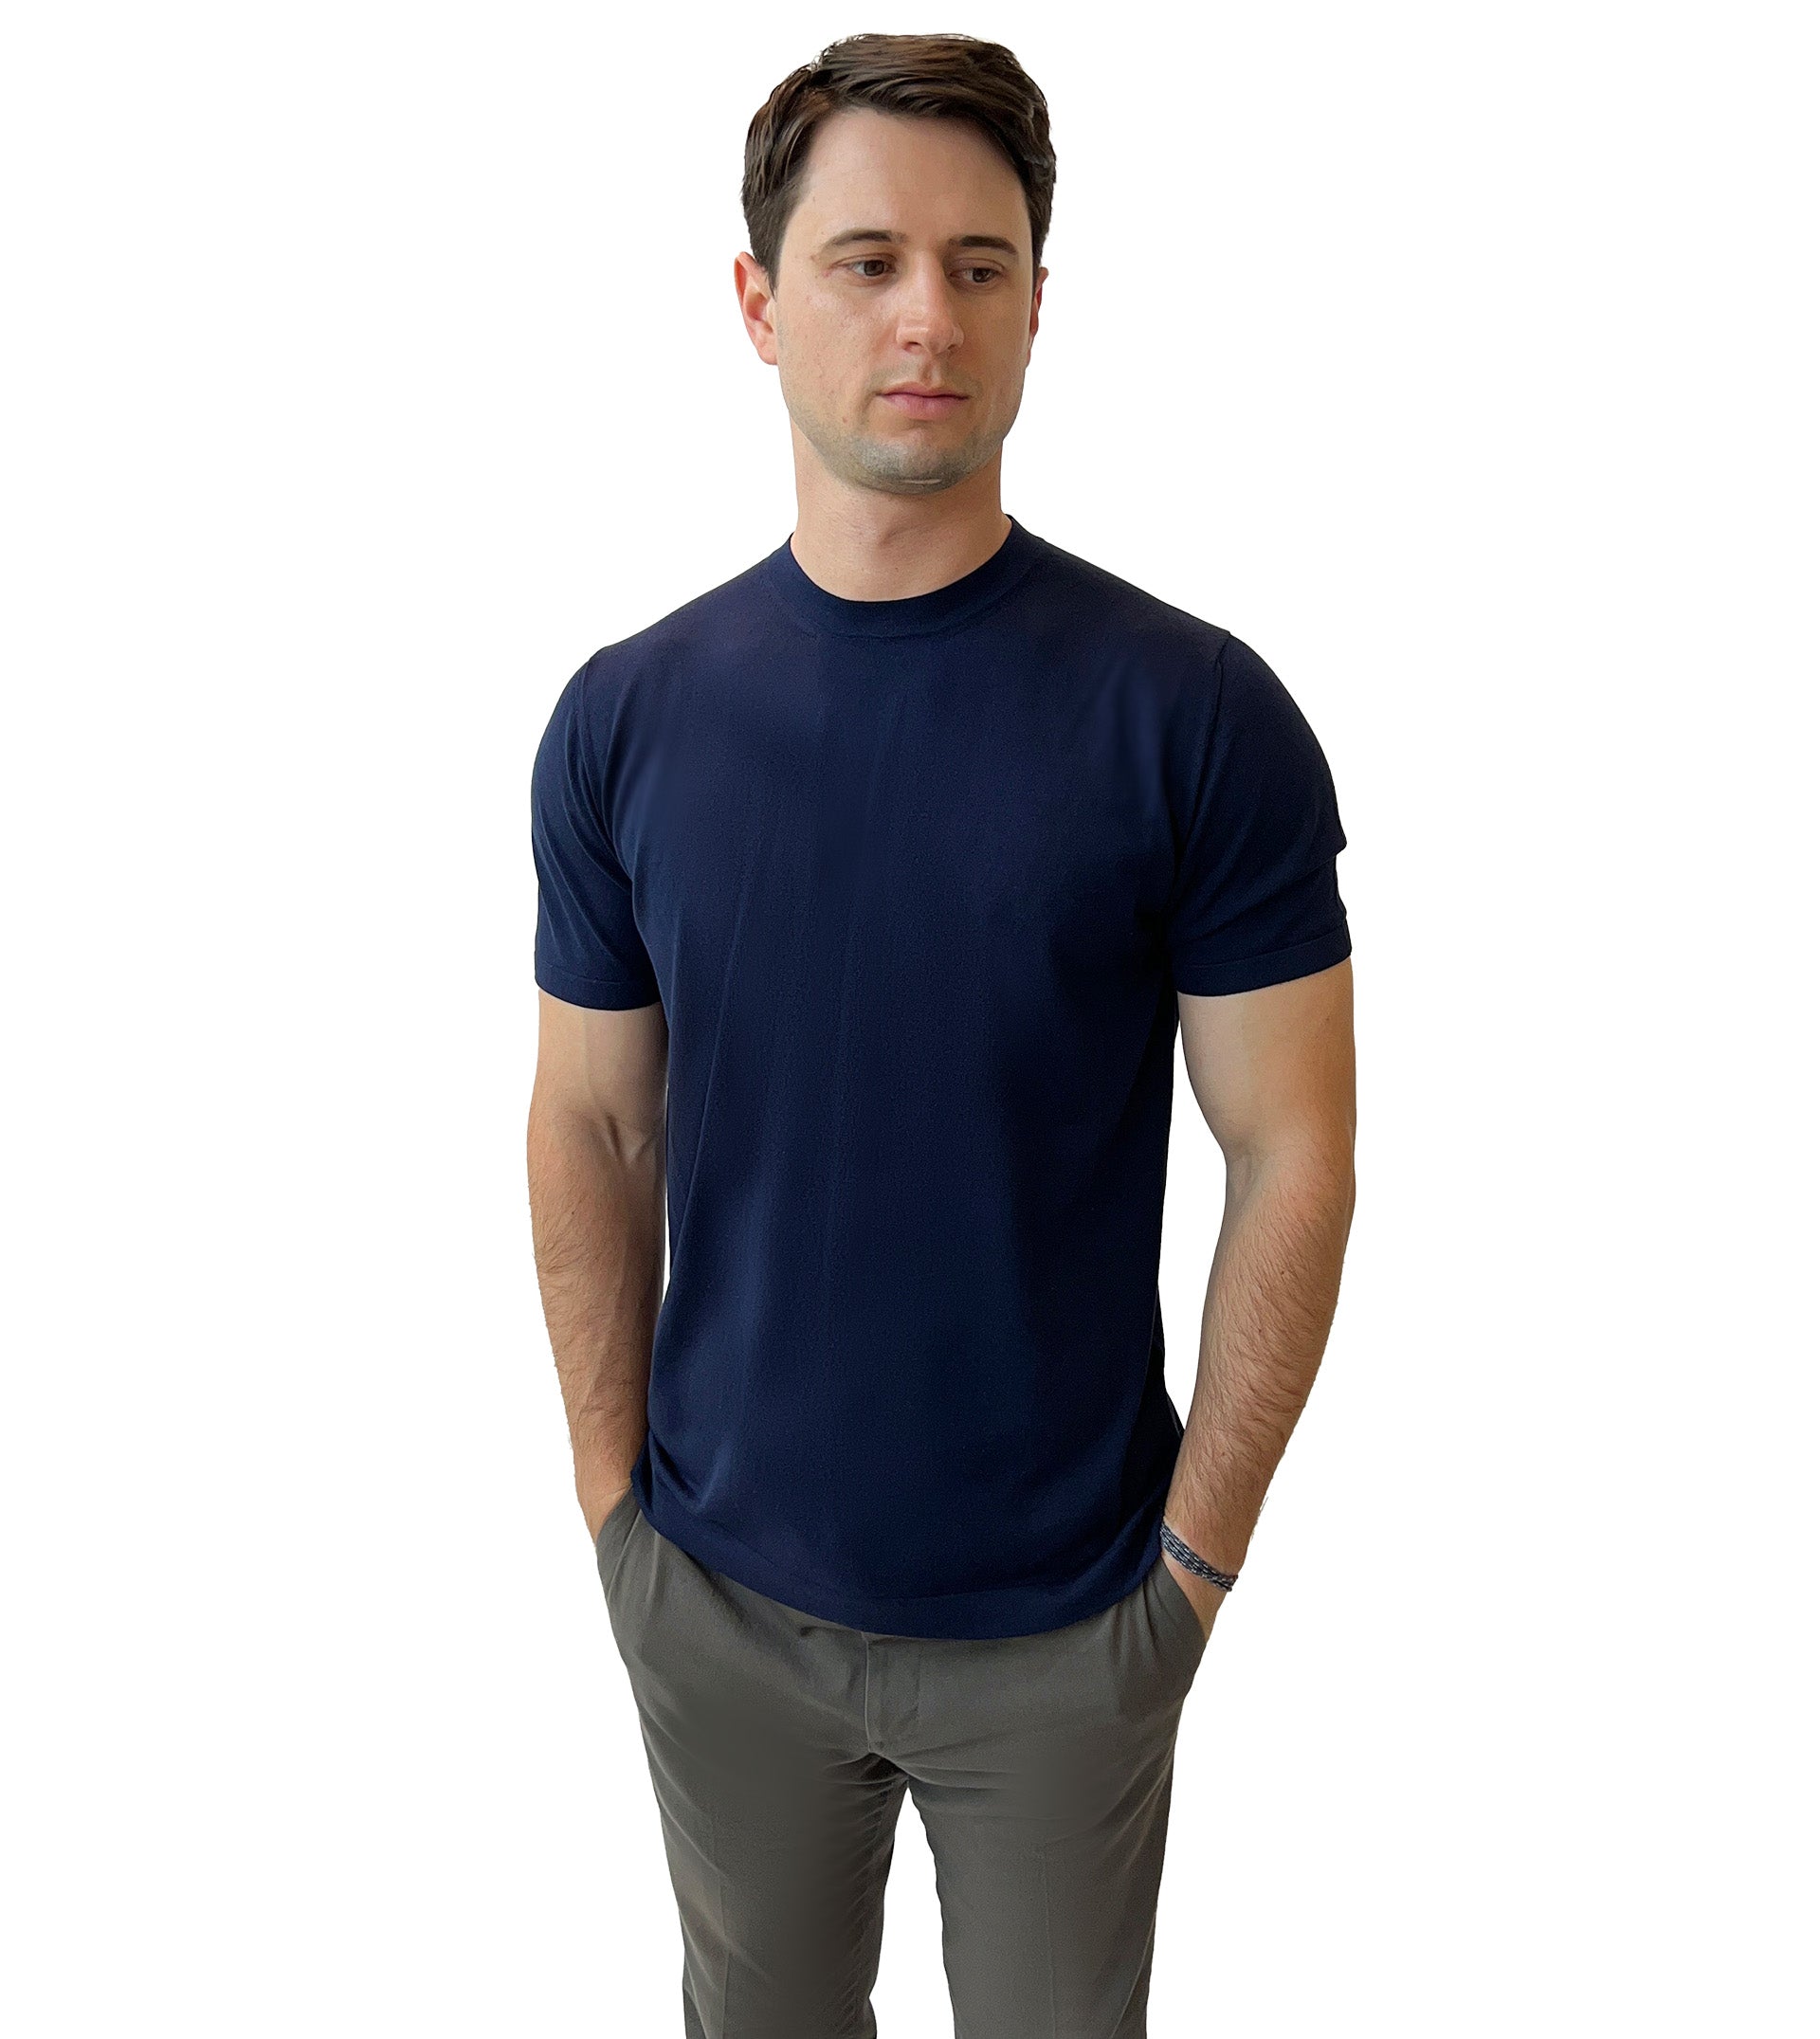 FIORONI CASHMERE Cotton/Cashmere Crewneck T-Shirt +Colors